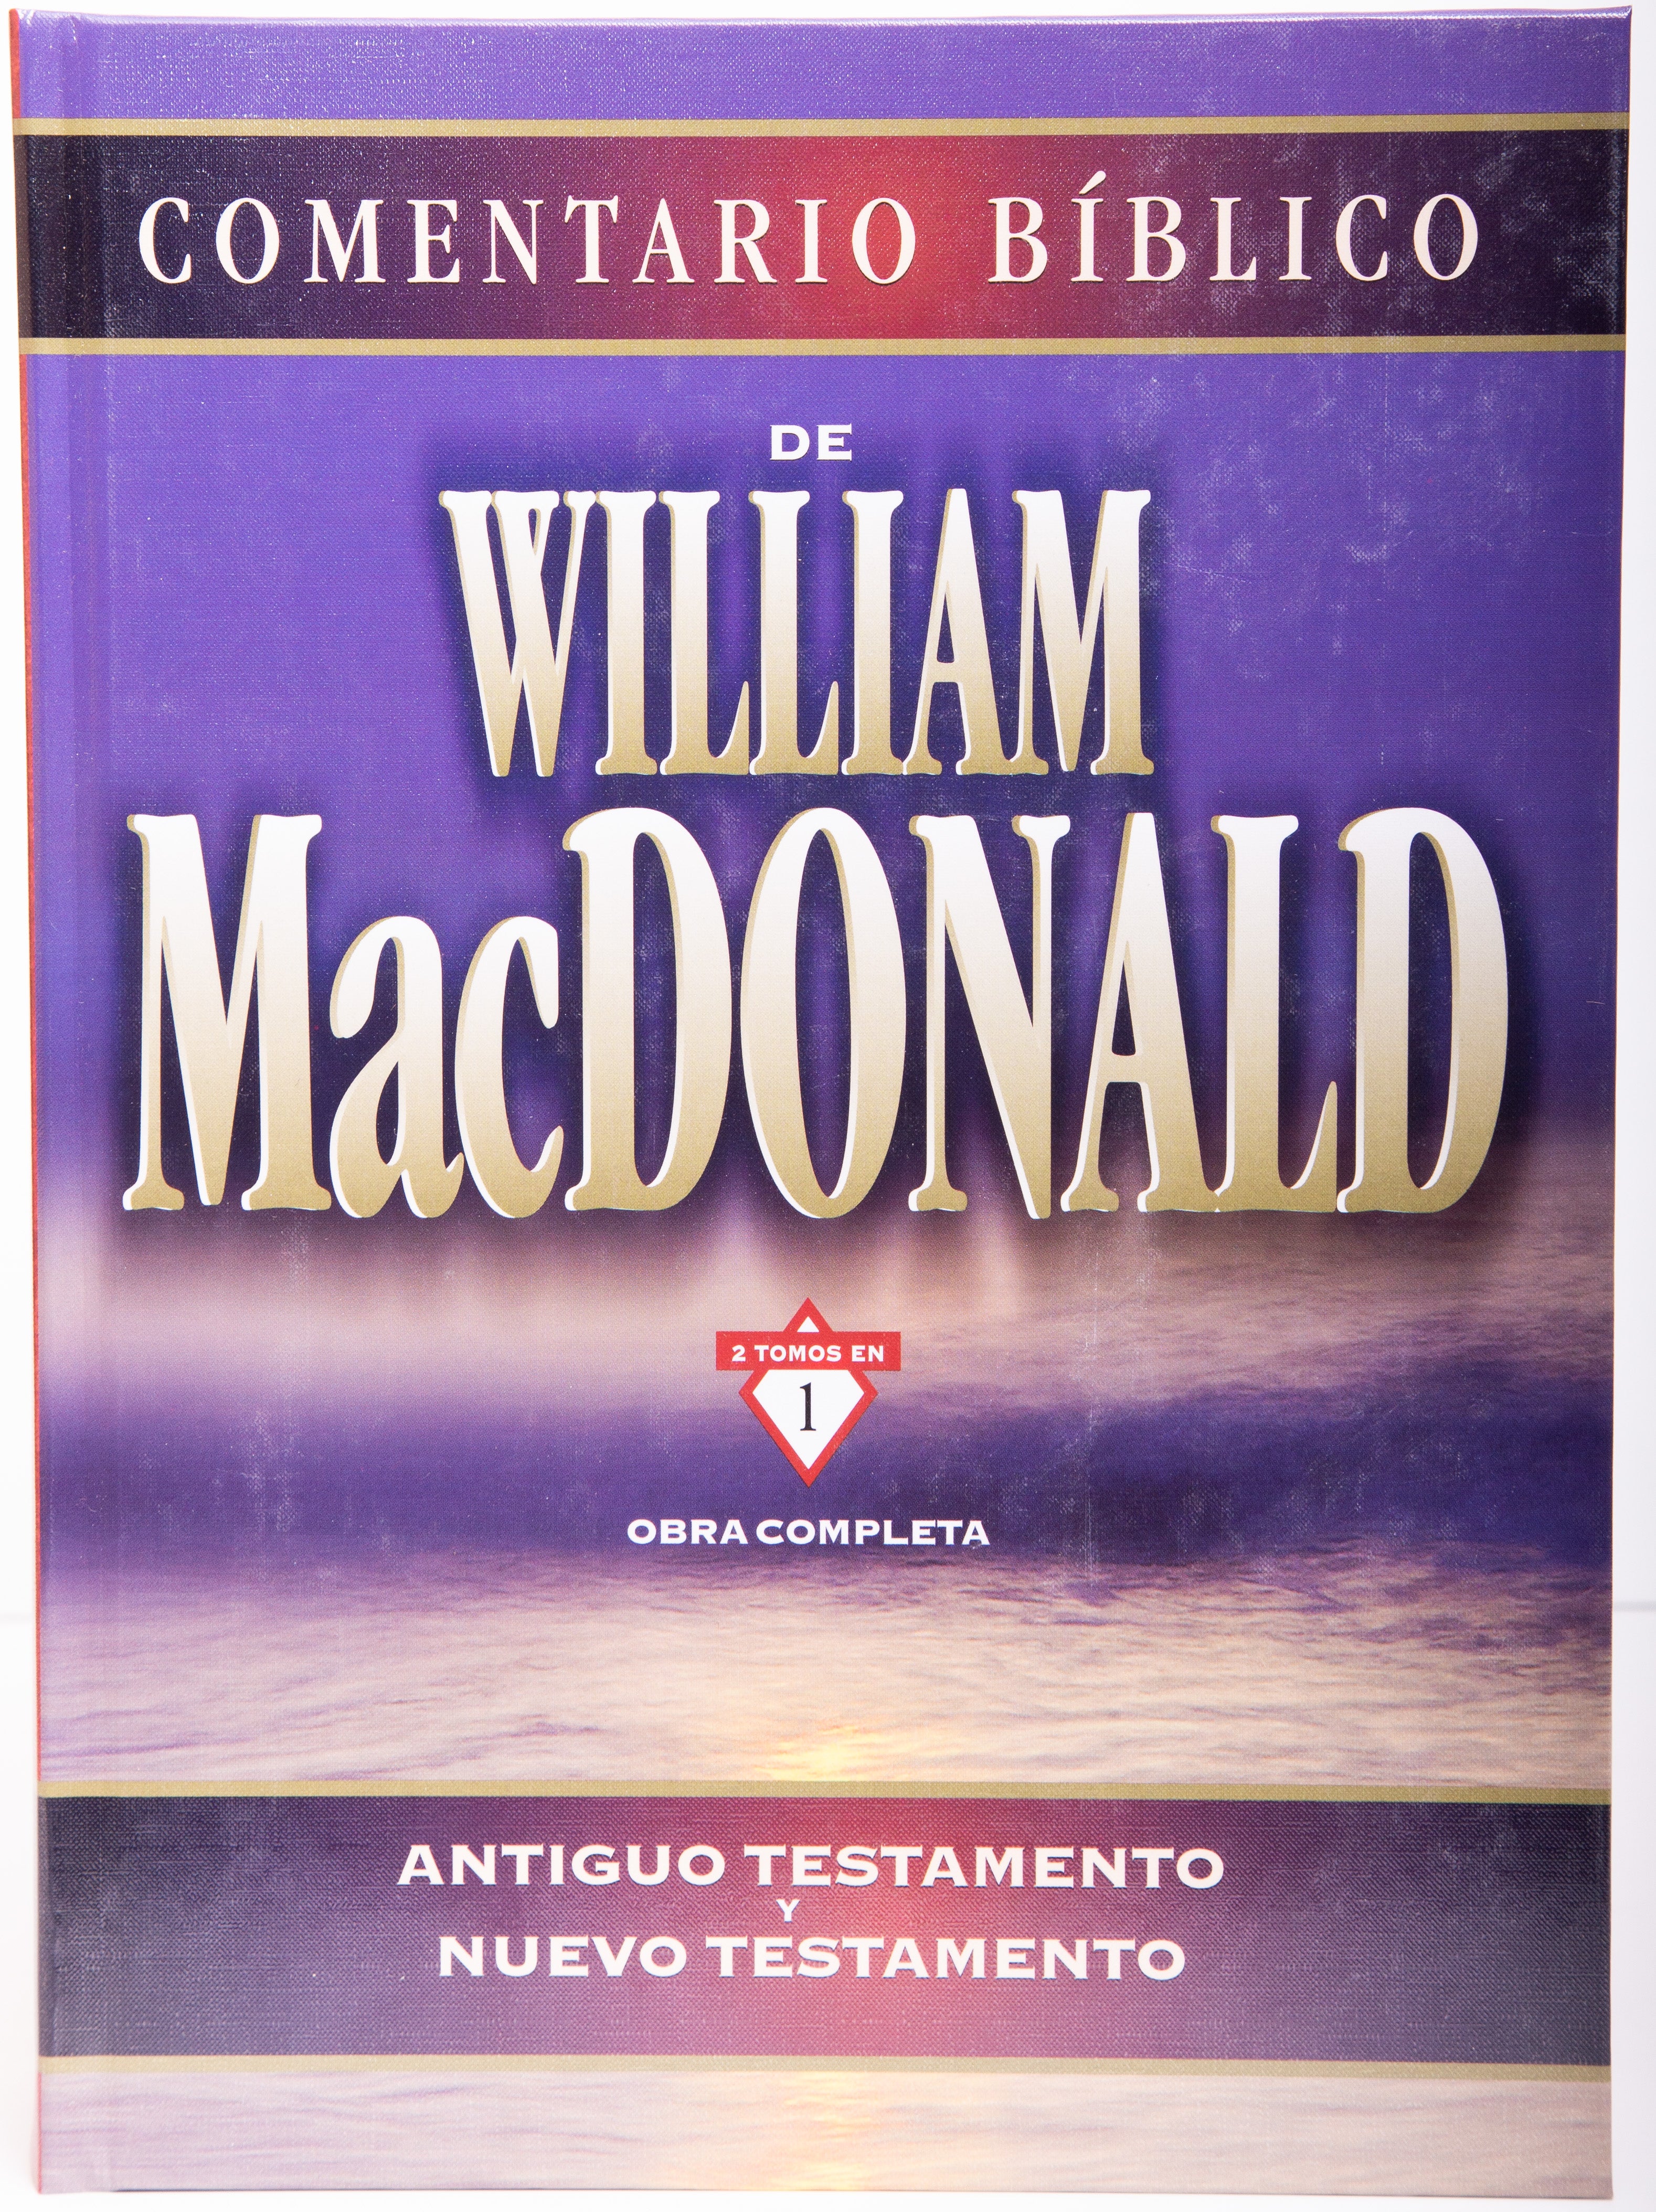 Comentario Bíblico William Macdonald - Librería Libros Cristianos - Libro